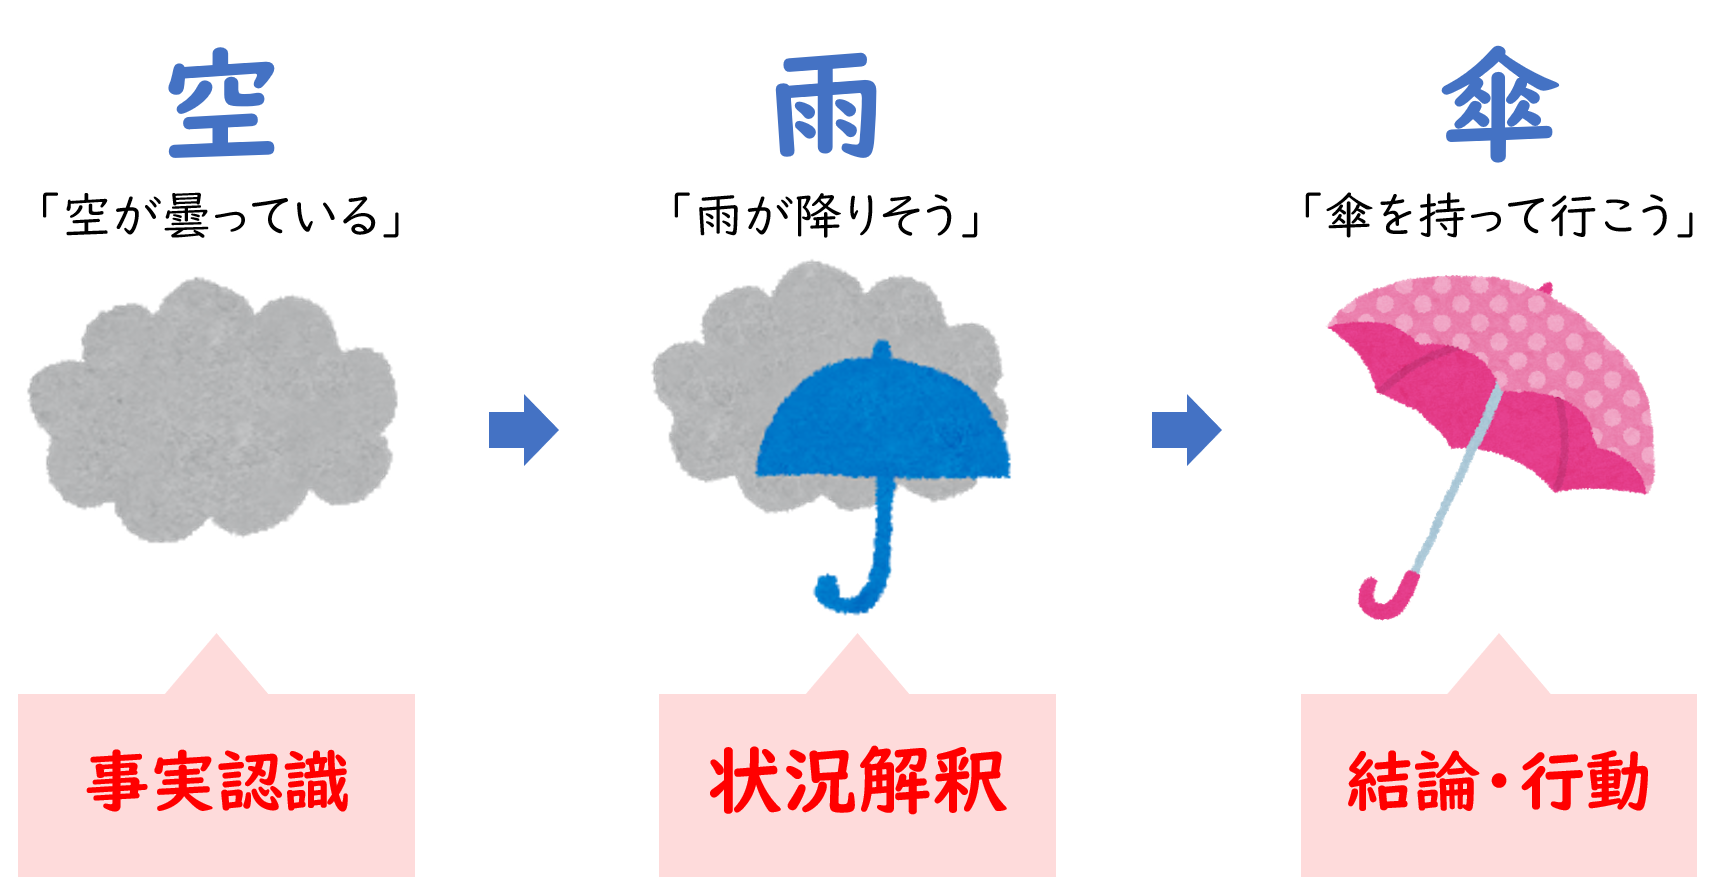 変化に取り残されず生き残る方法 3c 空 雨 傘 4つの みる 戦略の整理整頓